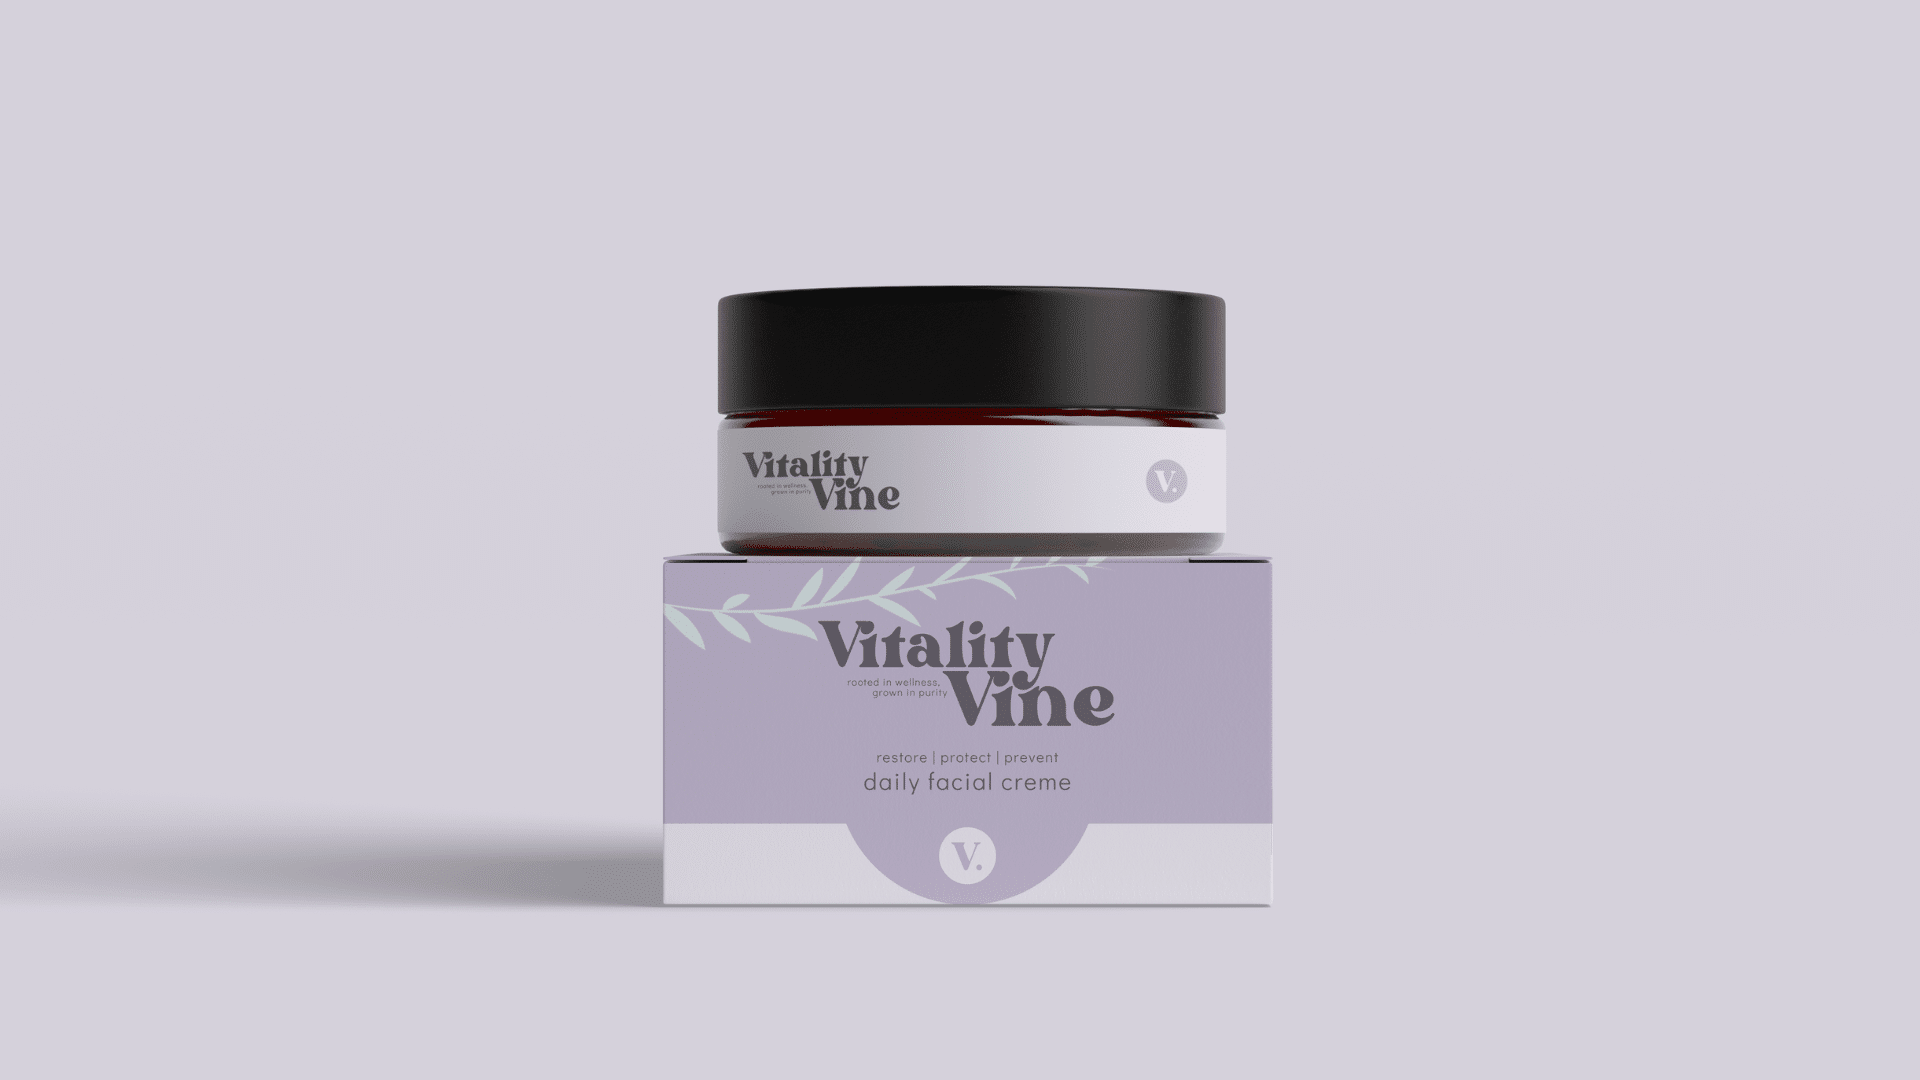 Vitality Vine Packaging Design